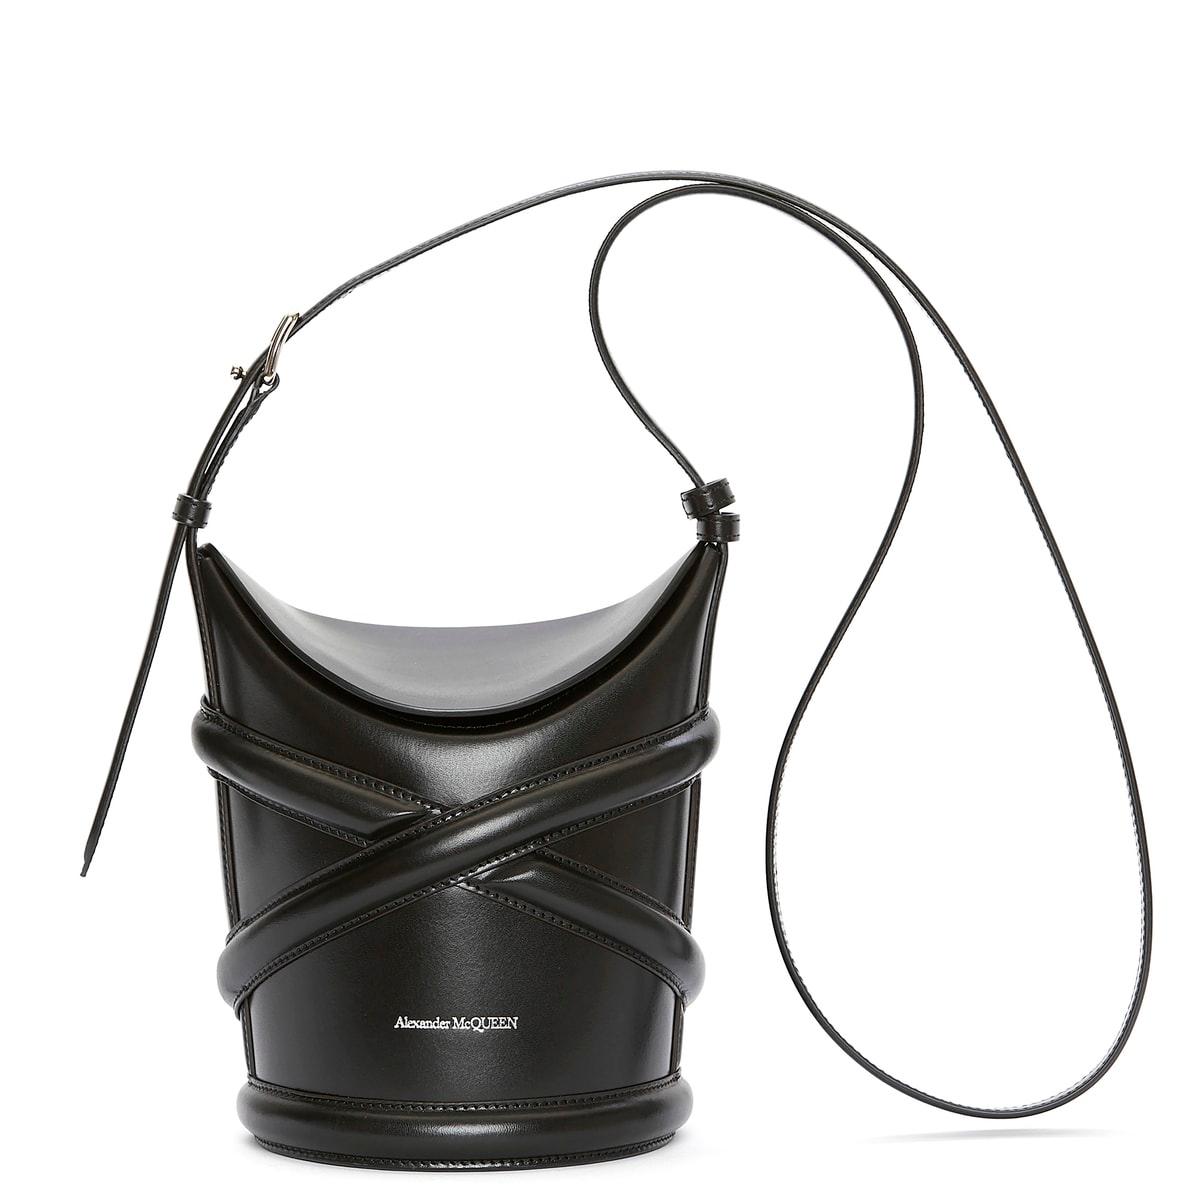 〈アレキサンダー・マックイーン〉のハーネスに着想を得た新作バッグ。豊富なカラー展開 - Slide:1